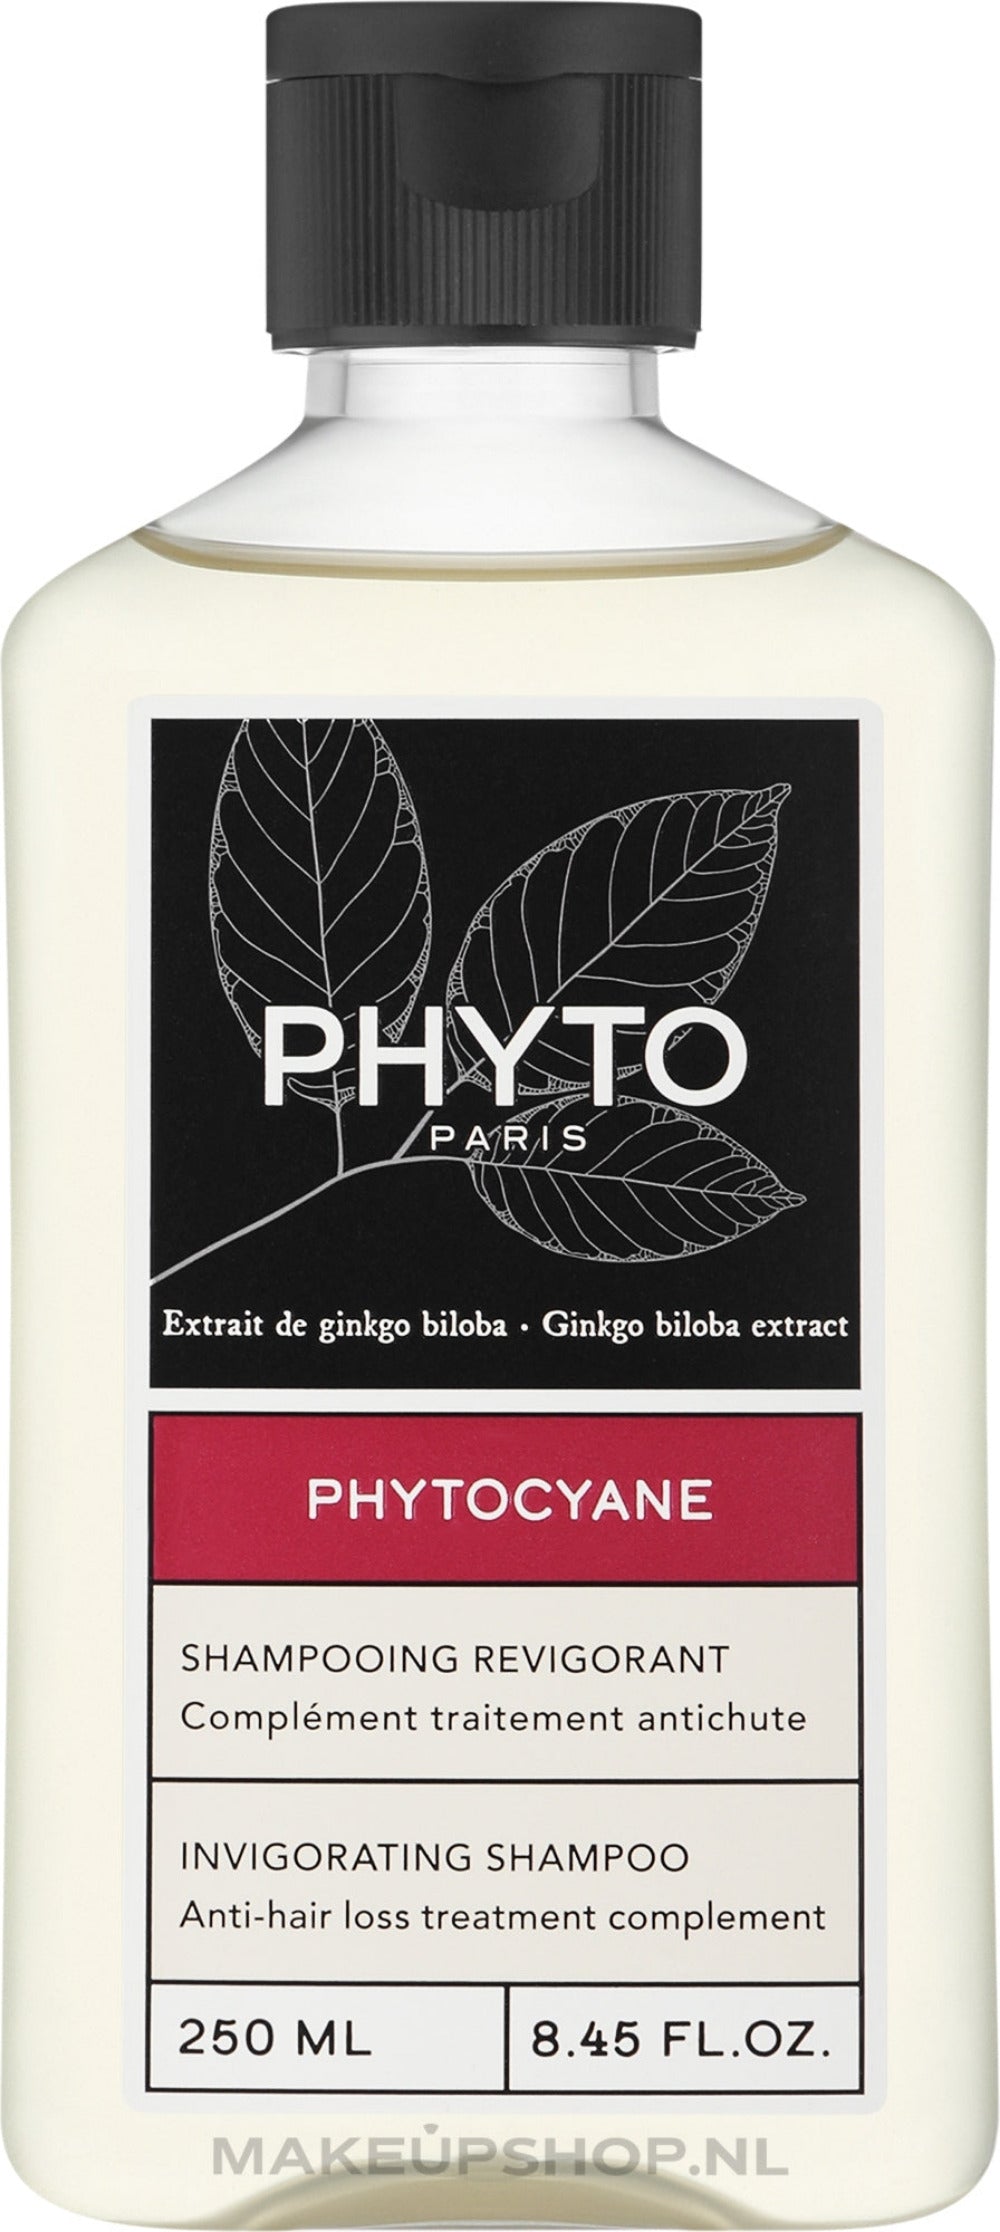 Phytocyane Shampoo 250 ml